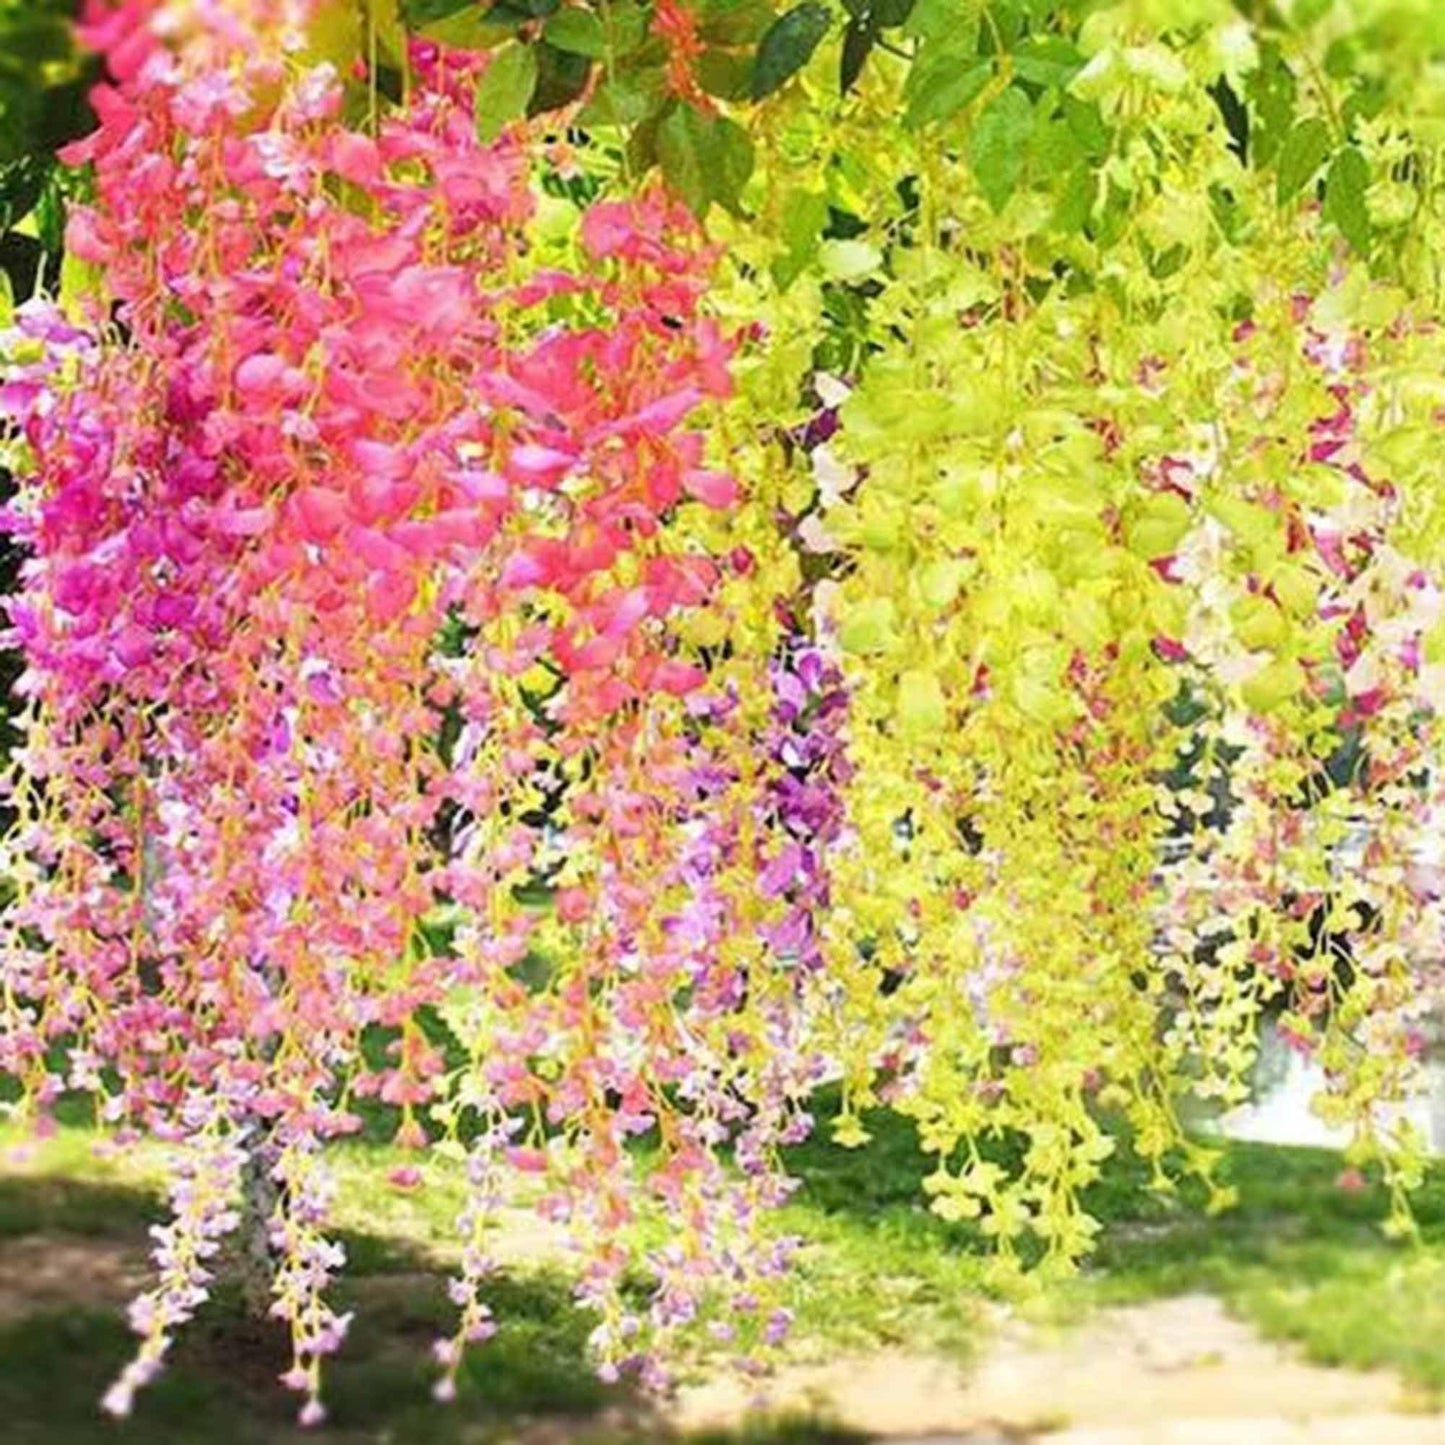 30+ Rare Wisteria Tree Seeds Mixed Color - Exquisite Ornamental Vine Climber for Your Garden